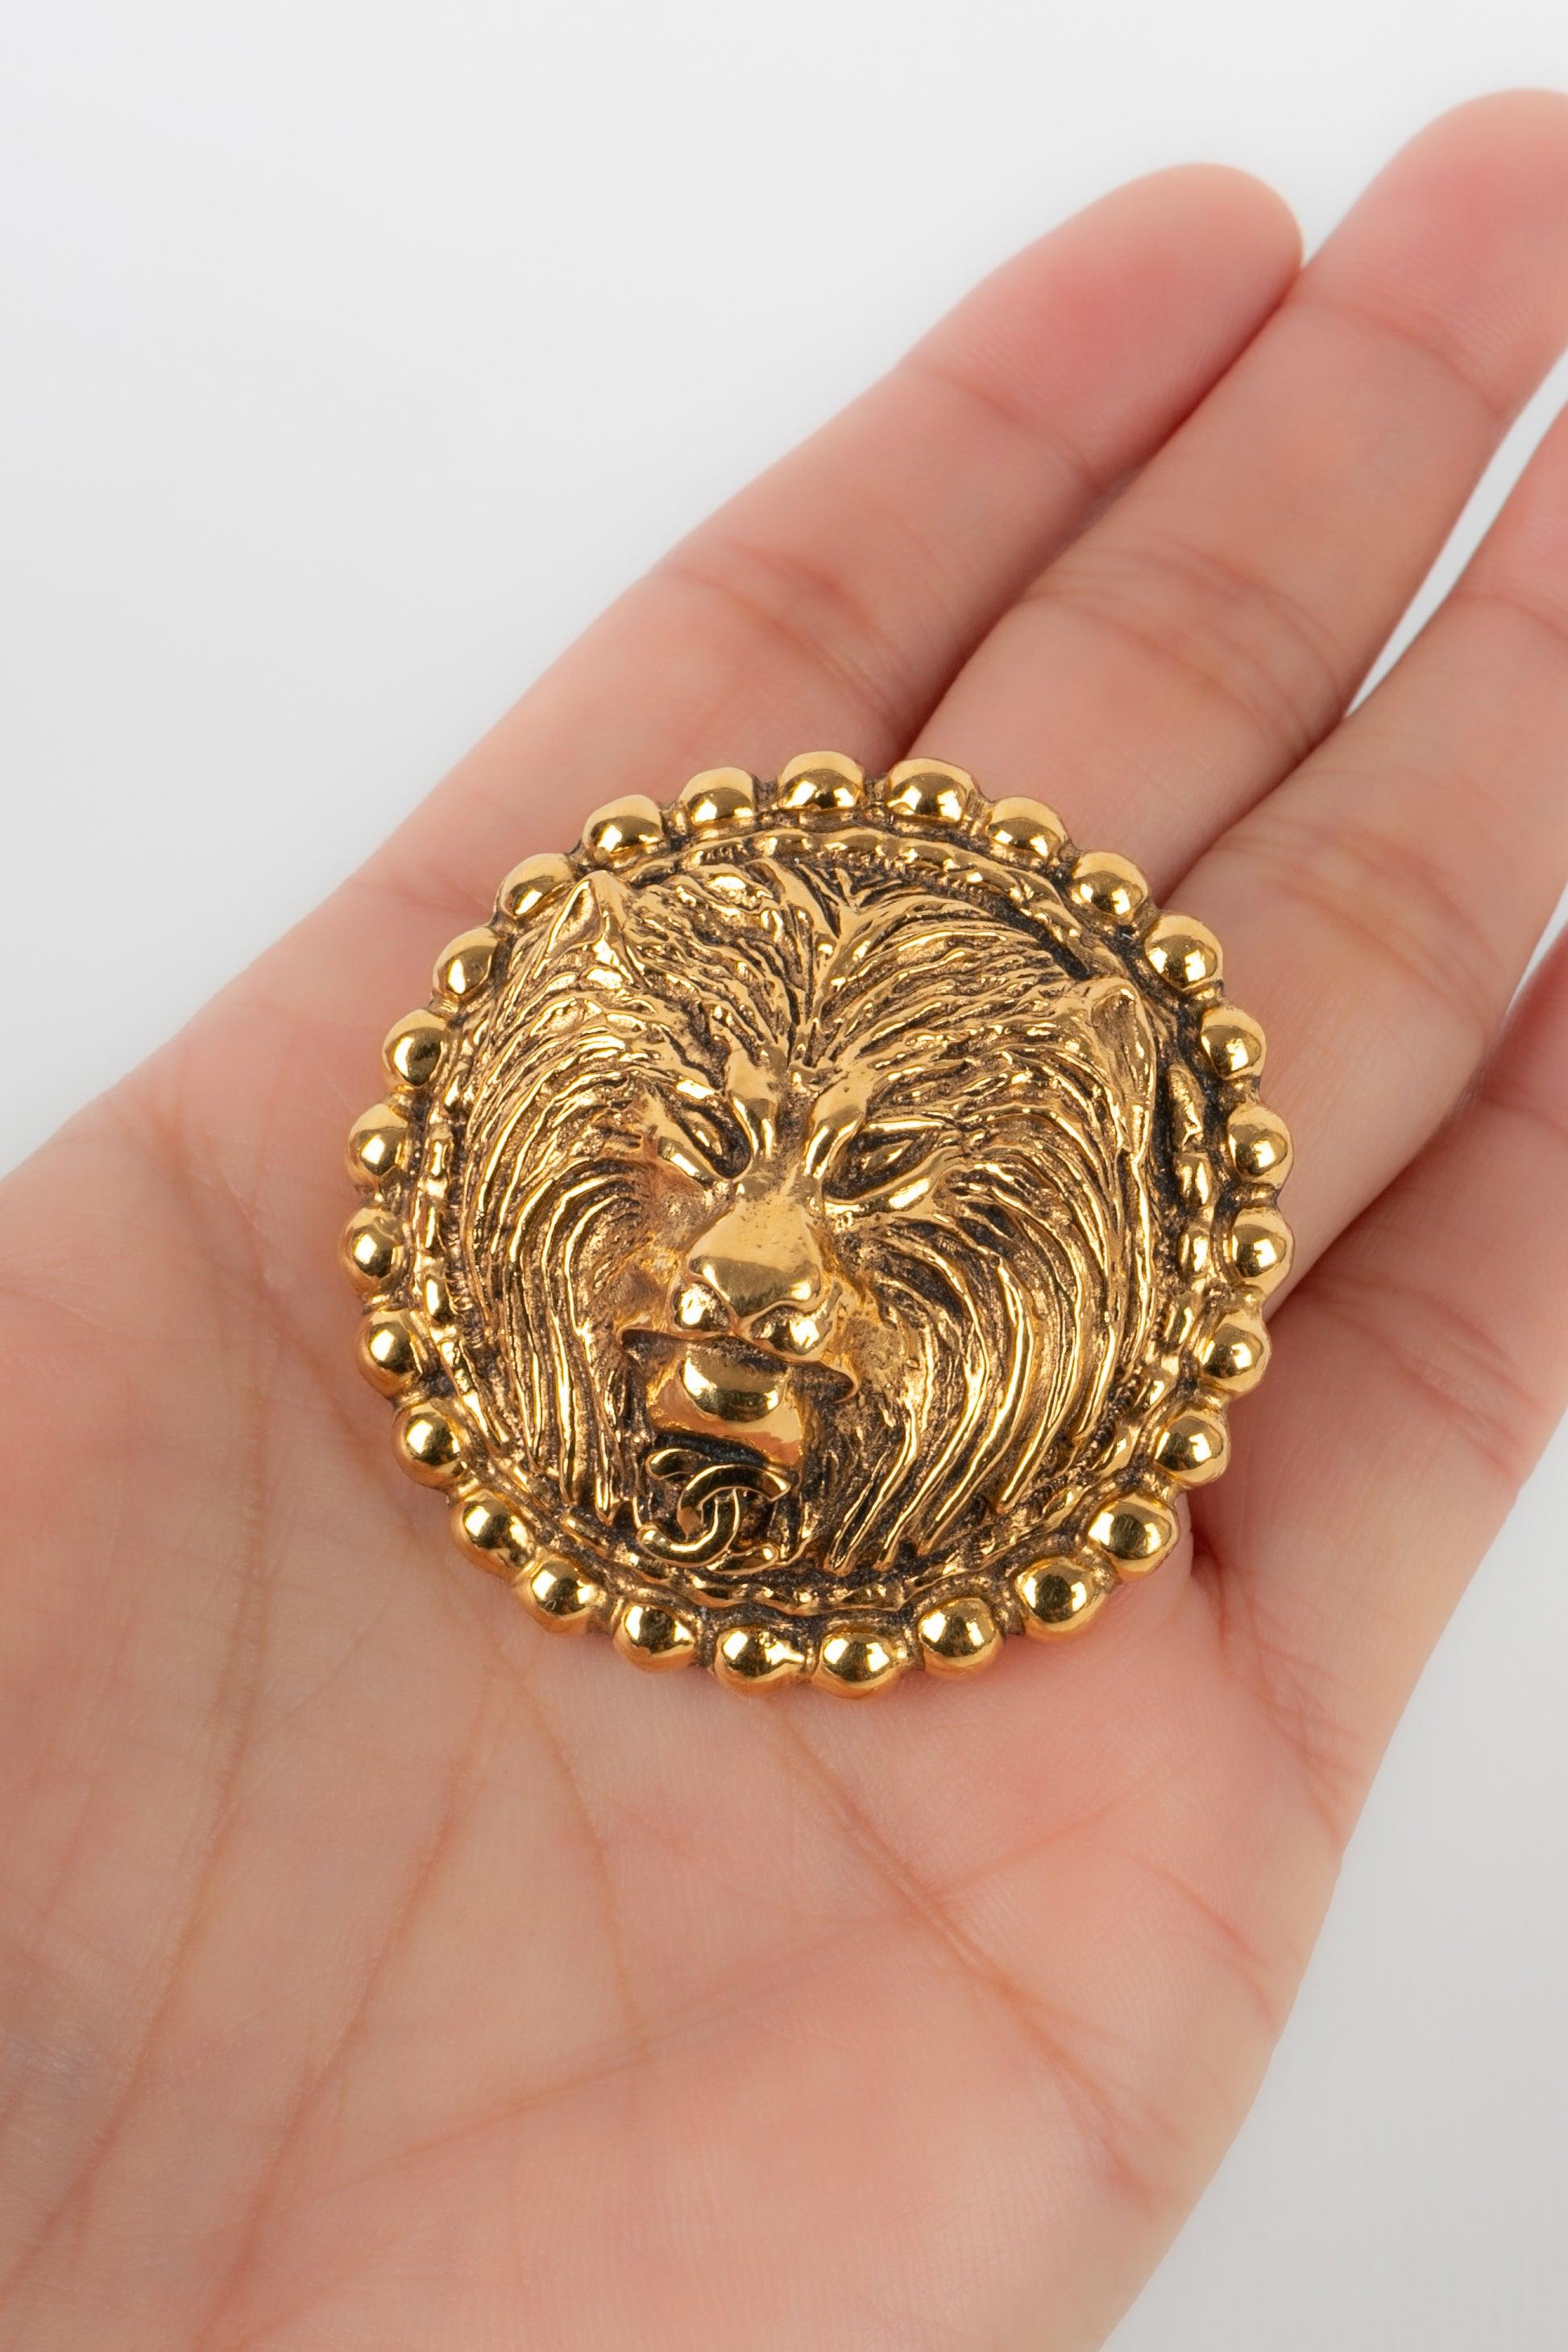 Chanel - Goldene Metallbrosche, die einen Löwenkopf darstellt. Collection'S 1983.

Zusätzliche Informationen:
Zustand: Sehr guter Zustand
Abmessungen: Durchmesser: 4,5 cm

Sellers Referenz: BRB77